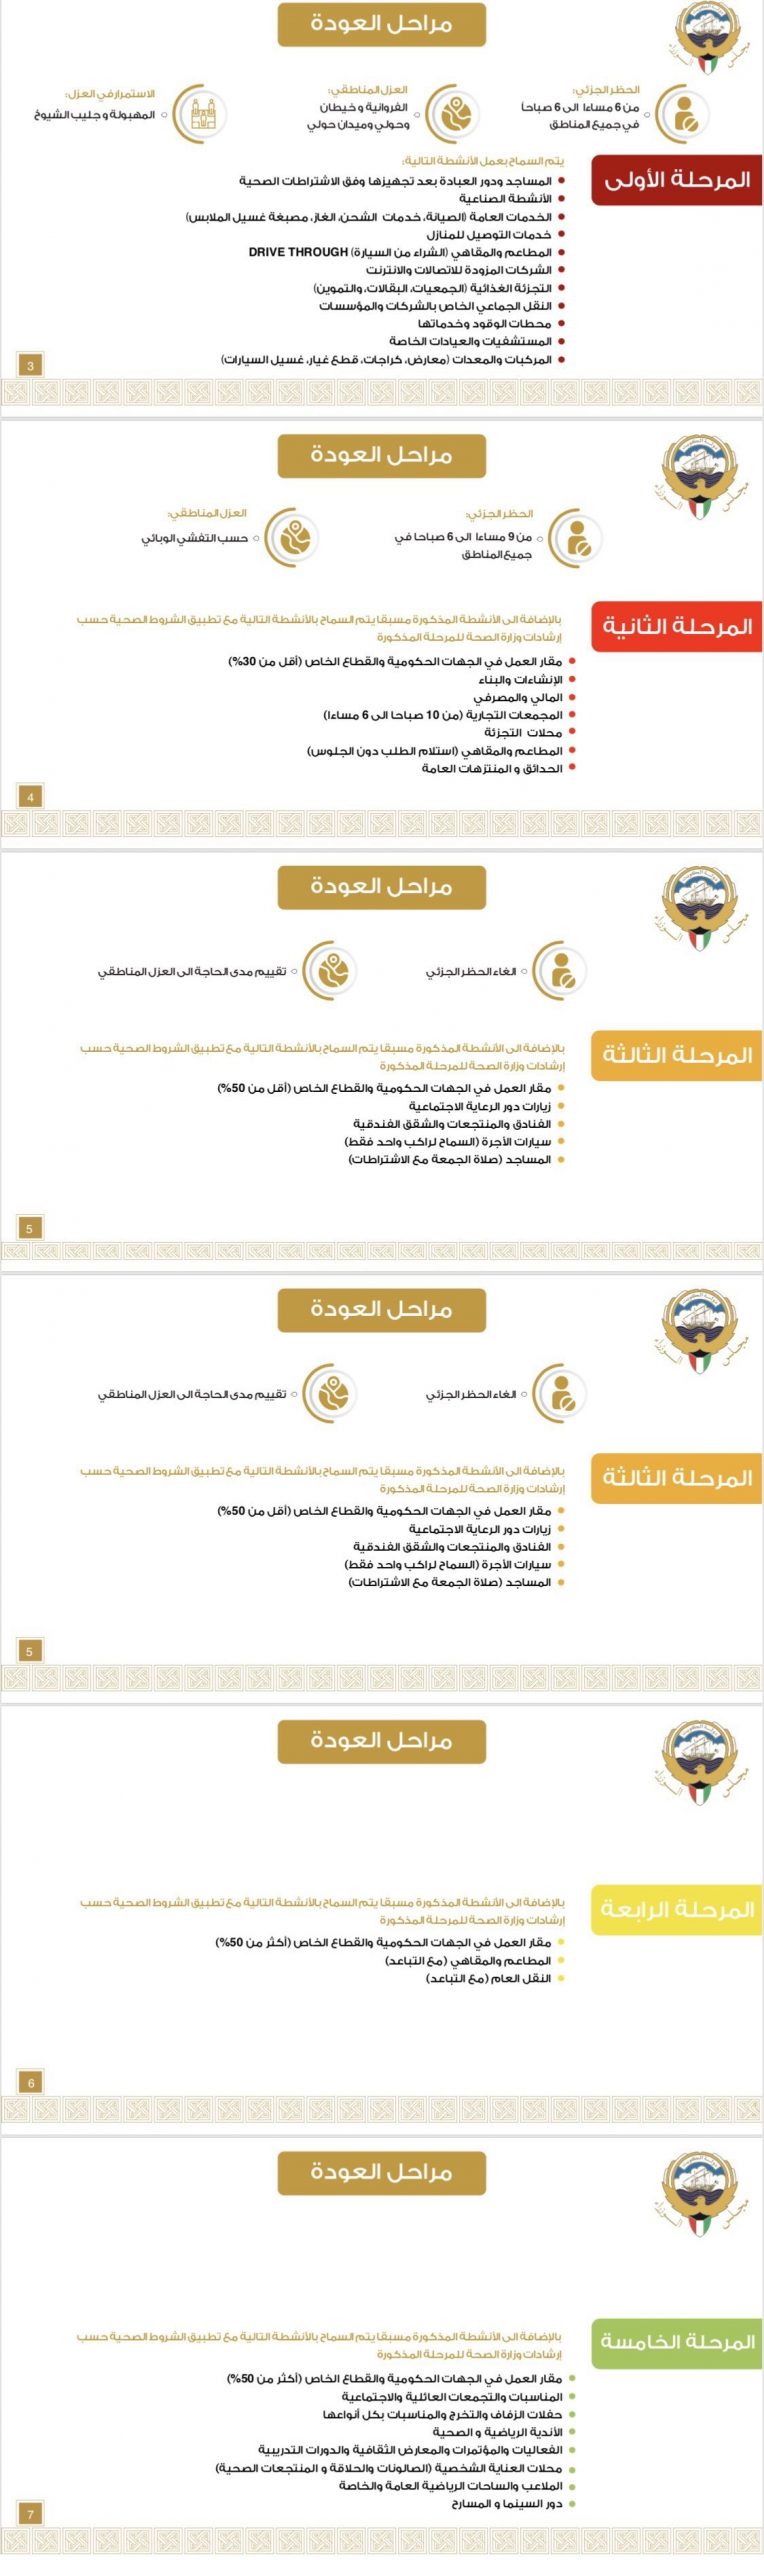 جدول مراحل عودة الحياة في الكويت